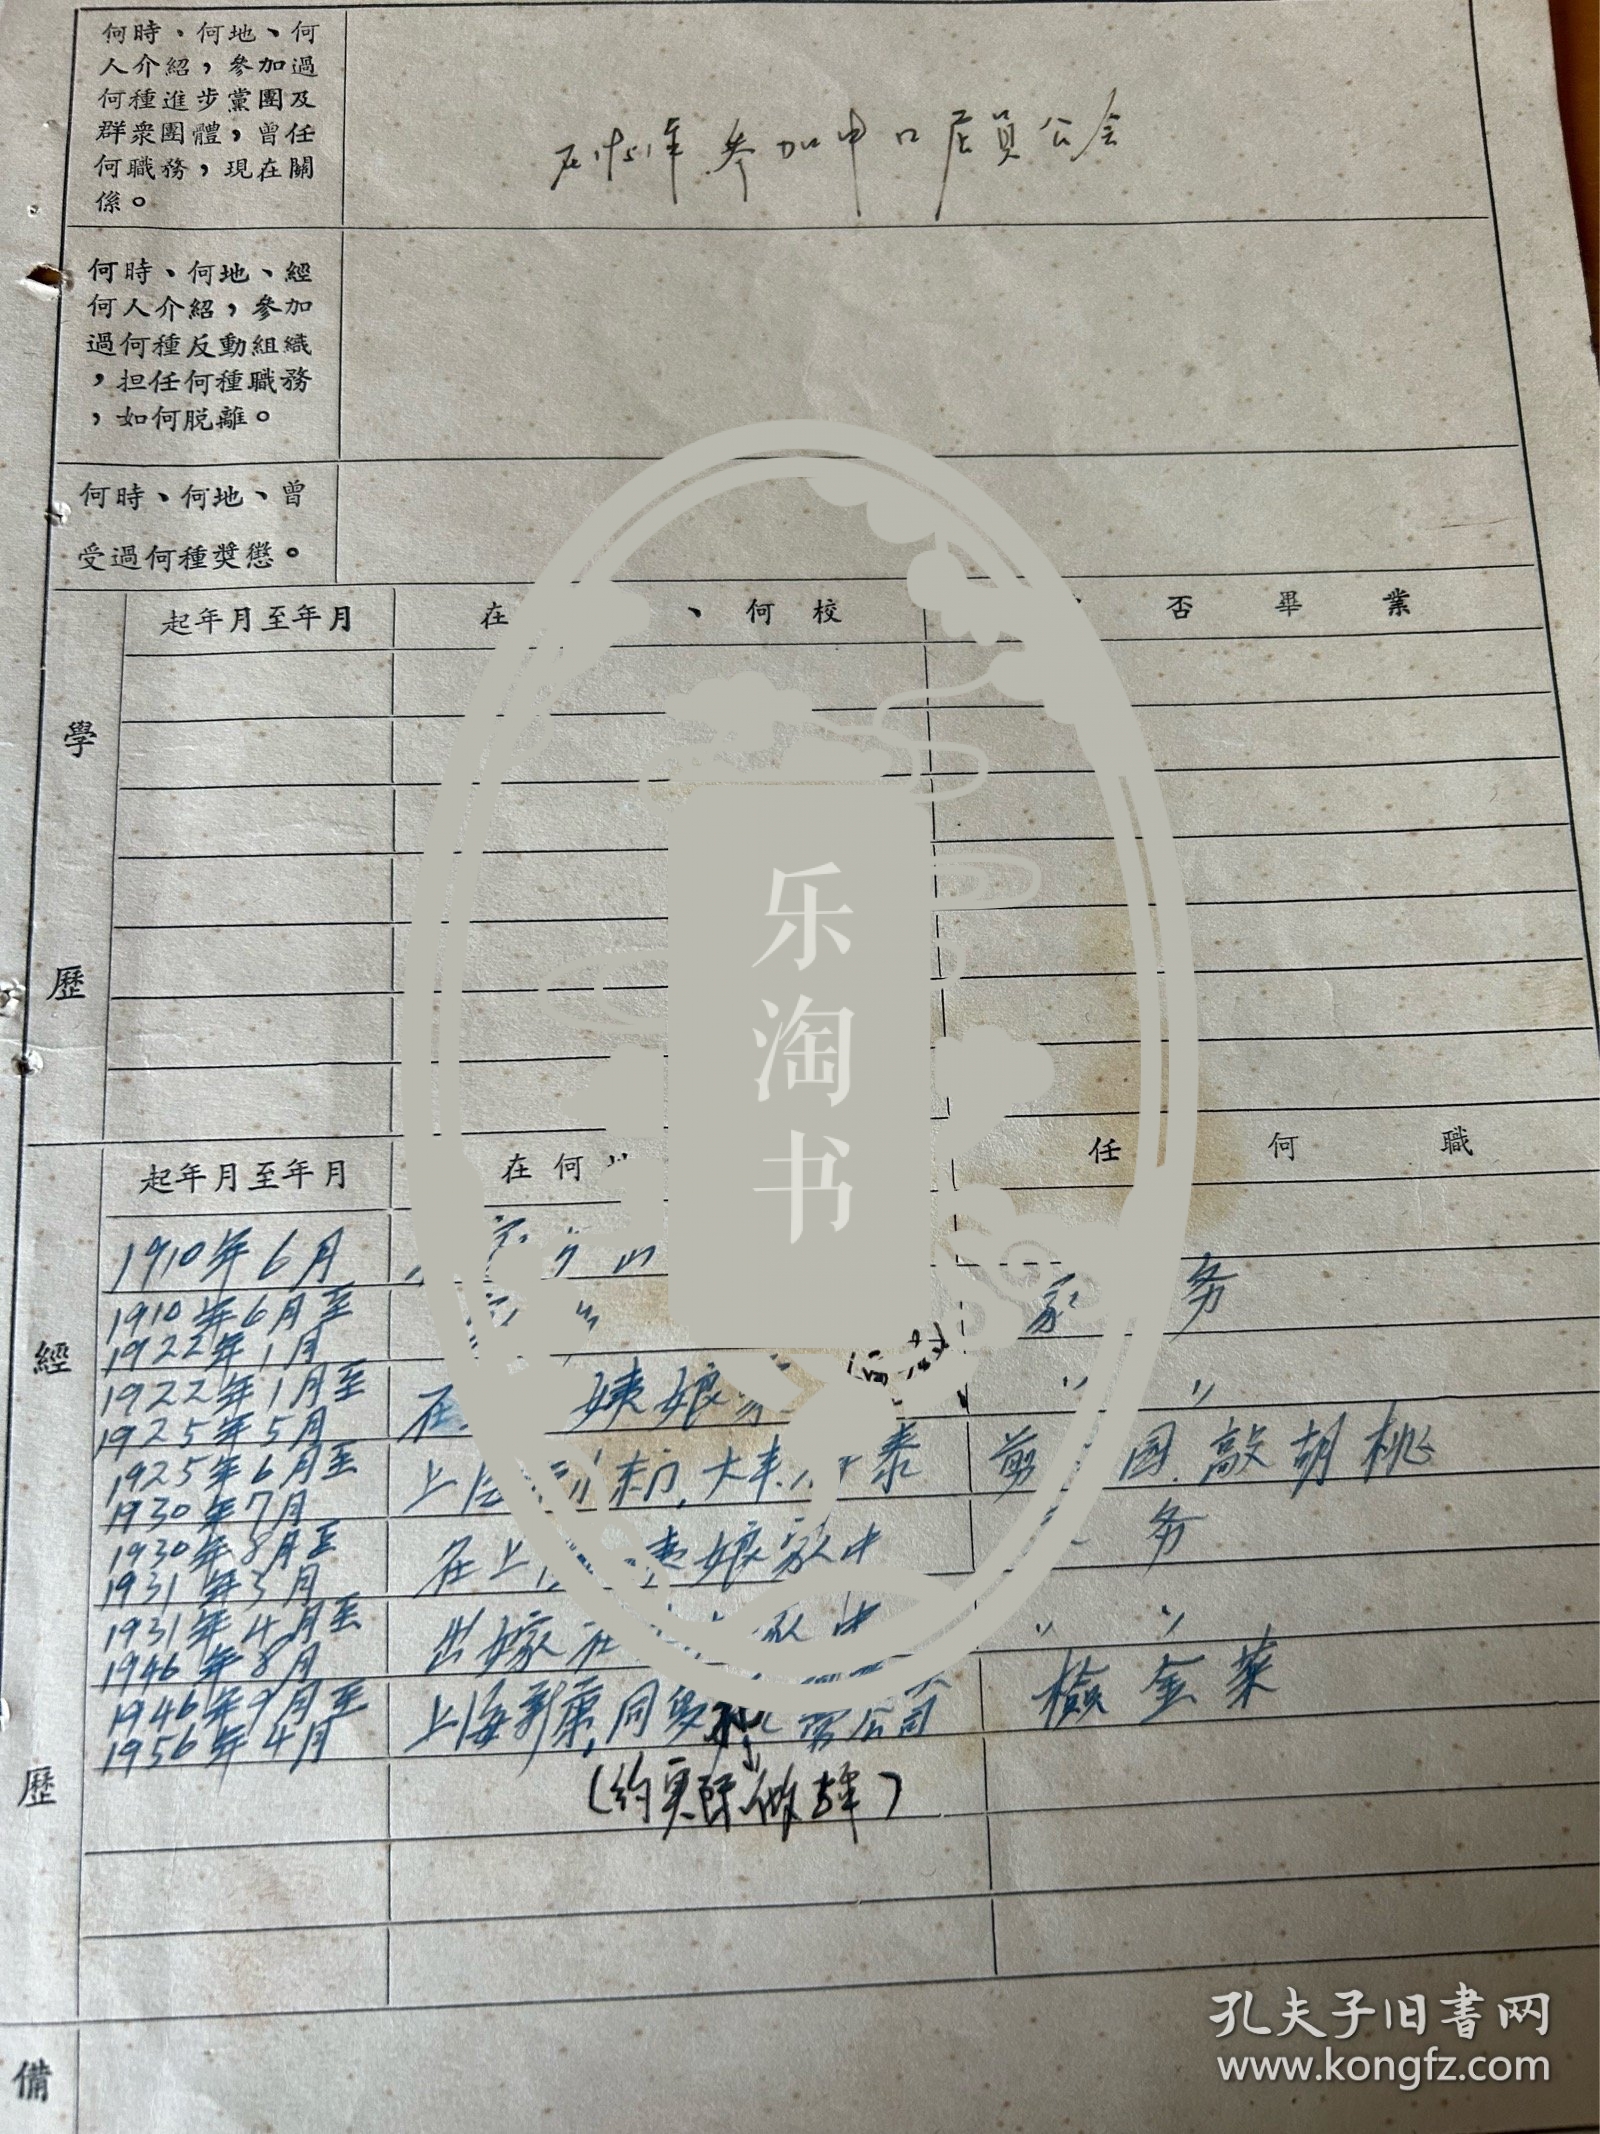 葛阿宝，曾用名闵宝娟，1910年生，江苏嘉定人，家庭履历表